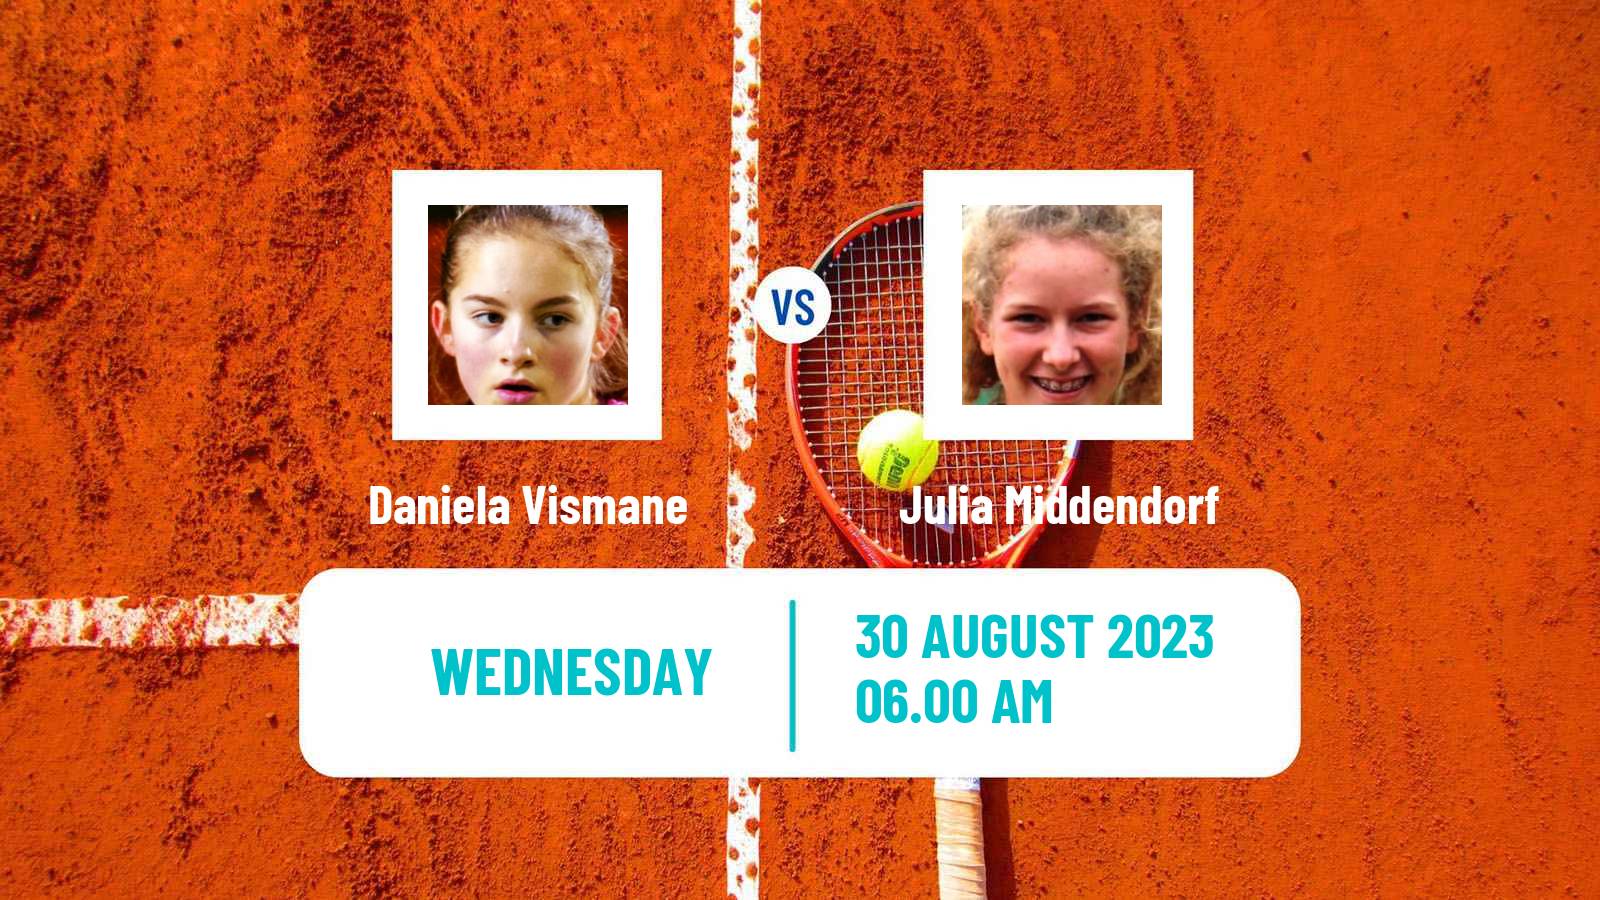 Tennis ITF W40 Oldenzaal Women Daniela Vismane - Julia Middendorf